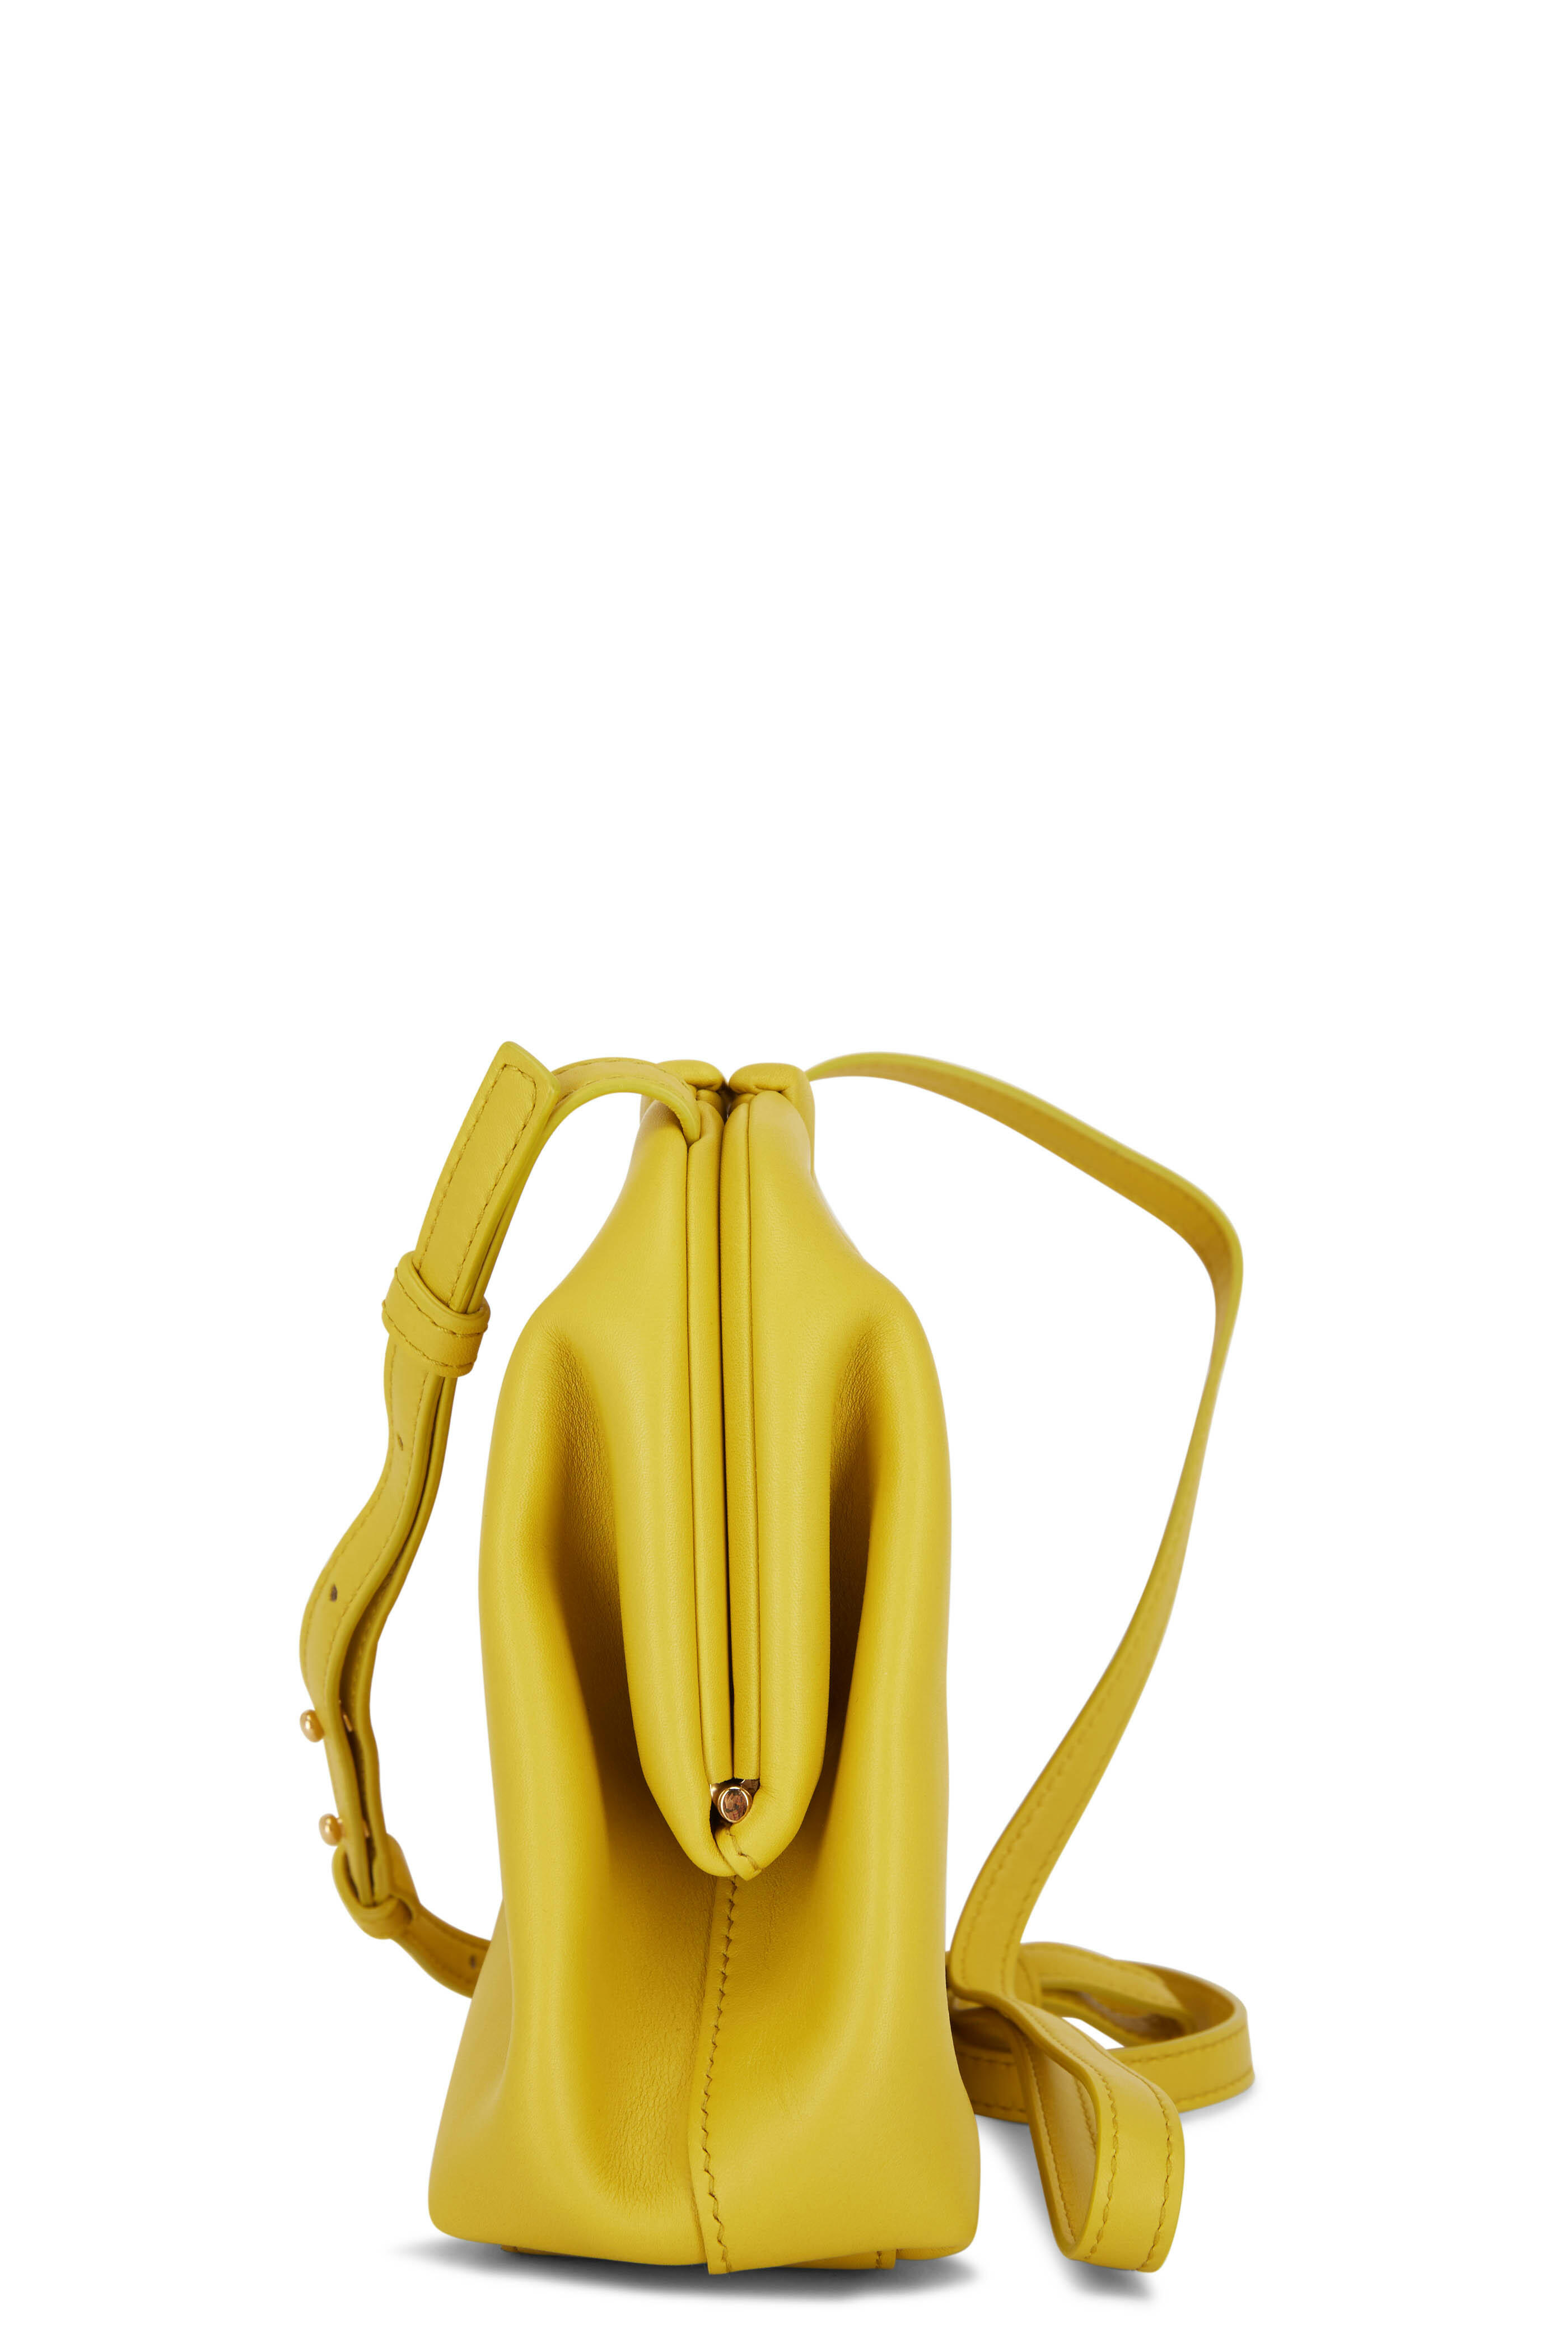 Point leather bag Bottega Veneta Yellow in Leather - 34336153